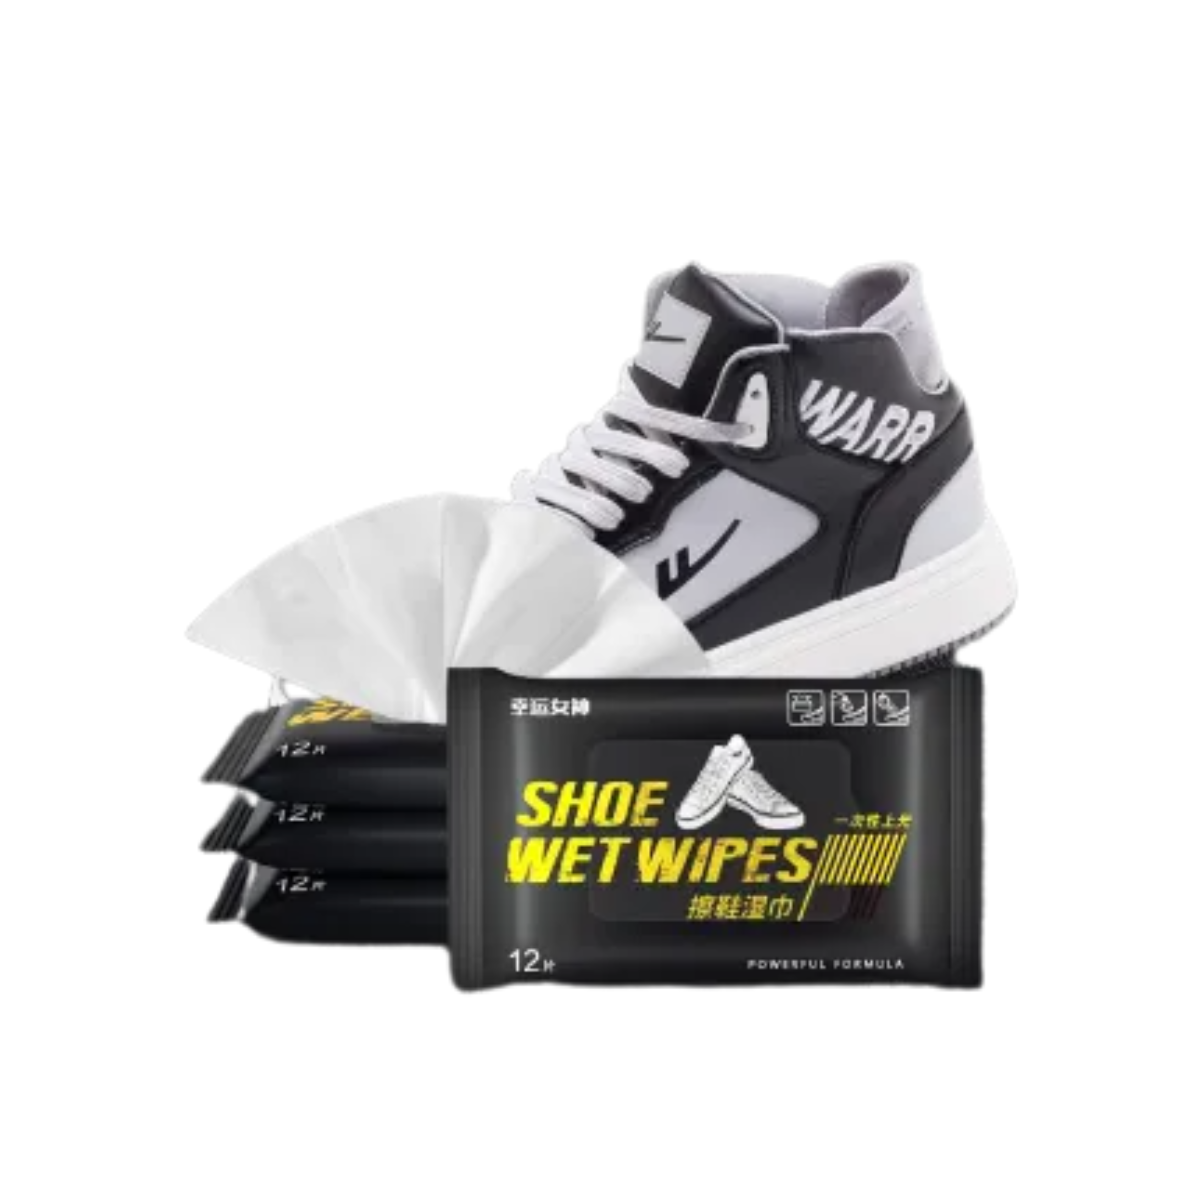 Shoe Wet Wipes - 80 Pieces